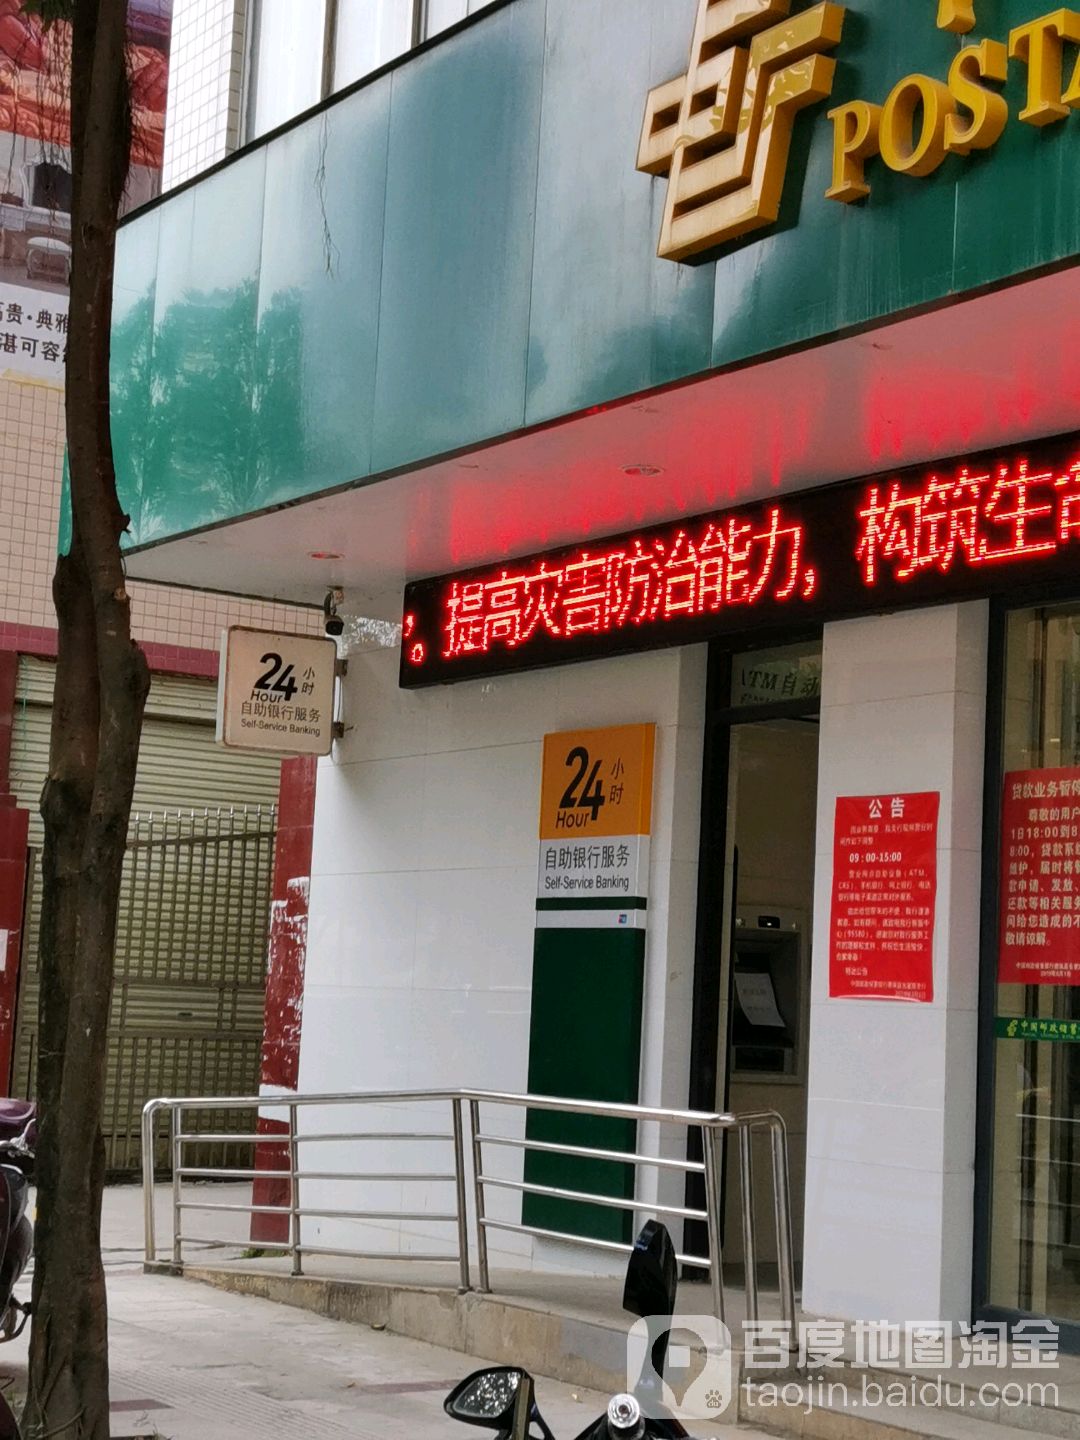 中國郵政儲蓄銀行24小時自助銀行(吉星路支行)